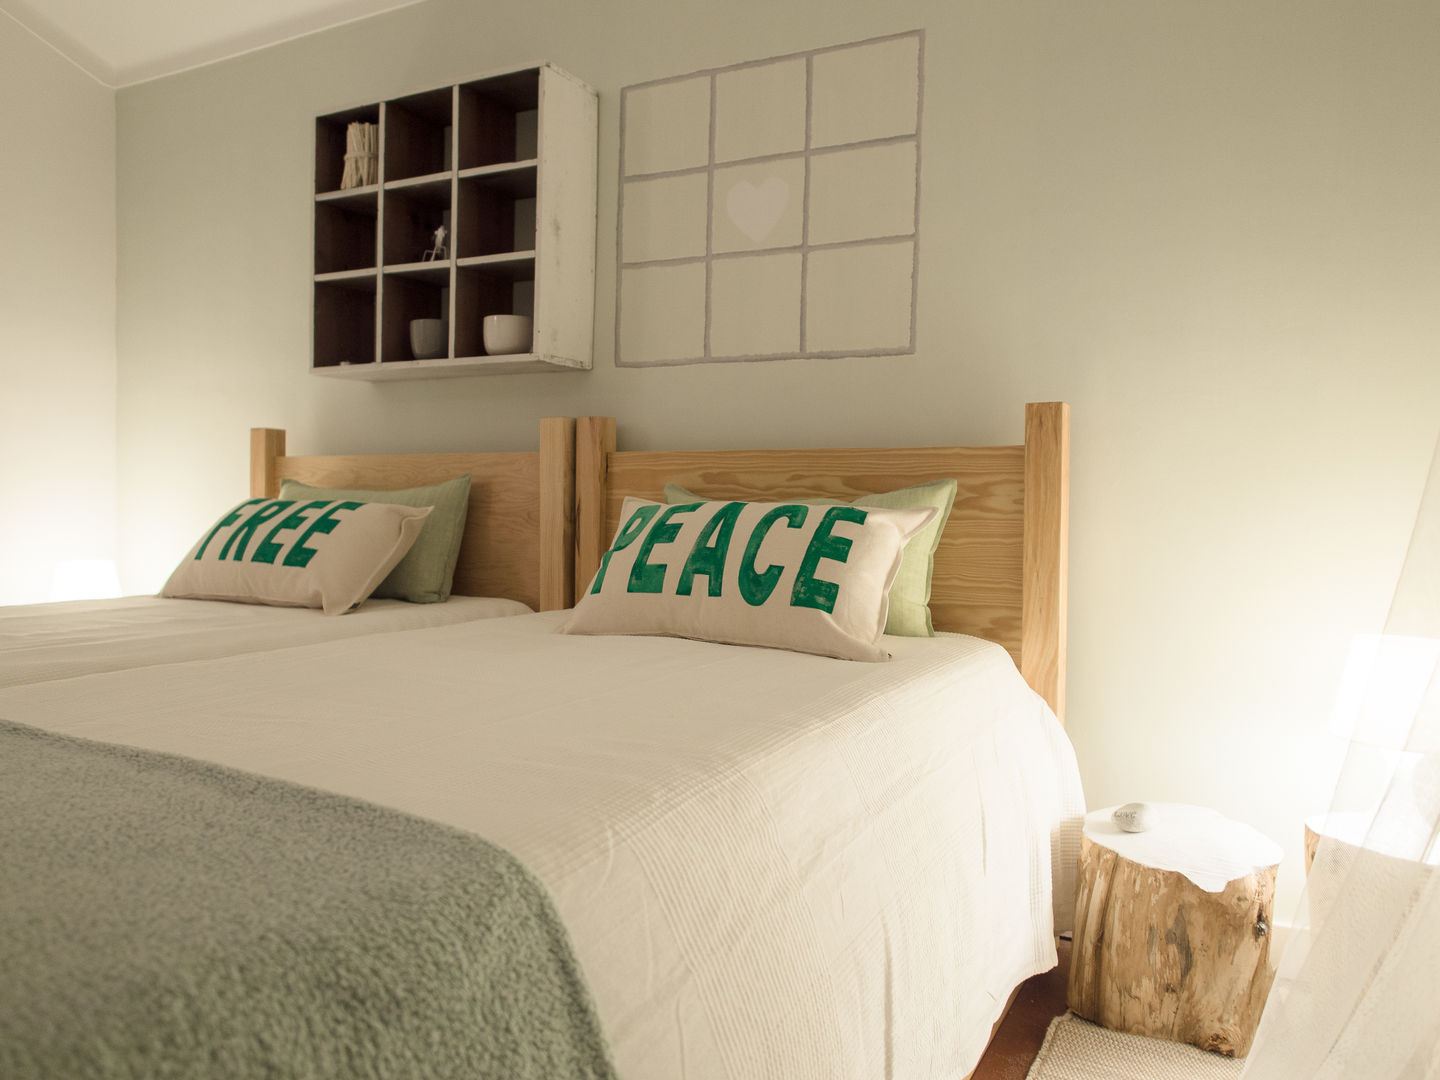 NiceWay Cascais Hostel - Life Bedroom - Cascais, MUDA Home Design MUDA Home Design 商业空间 飯店